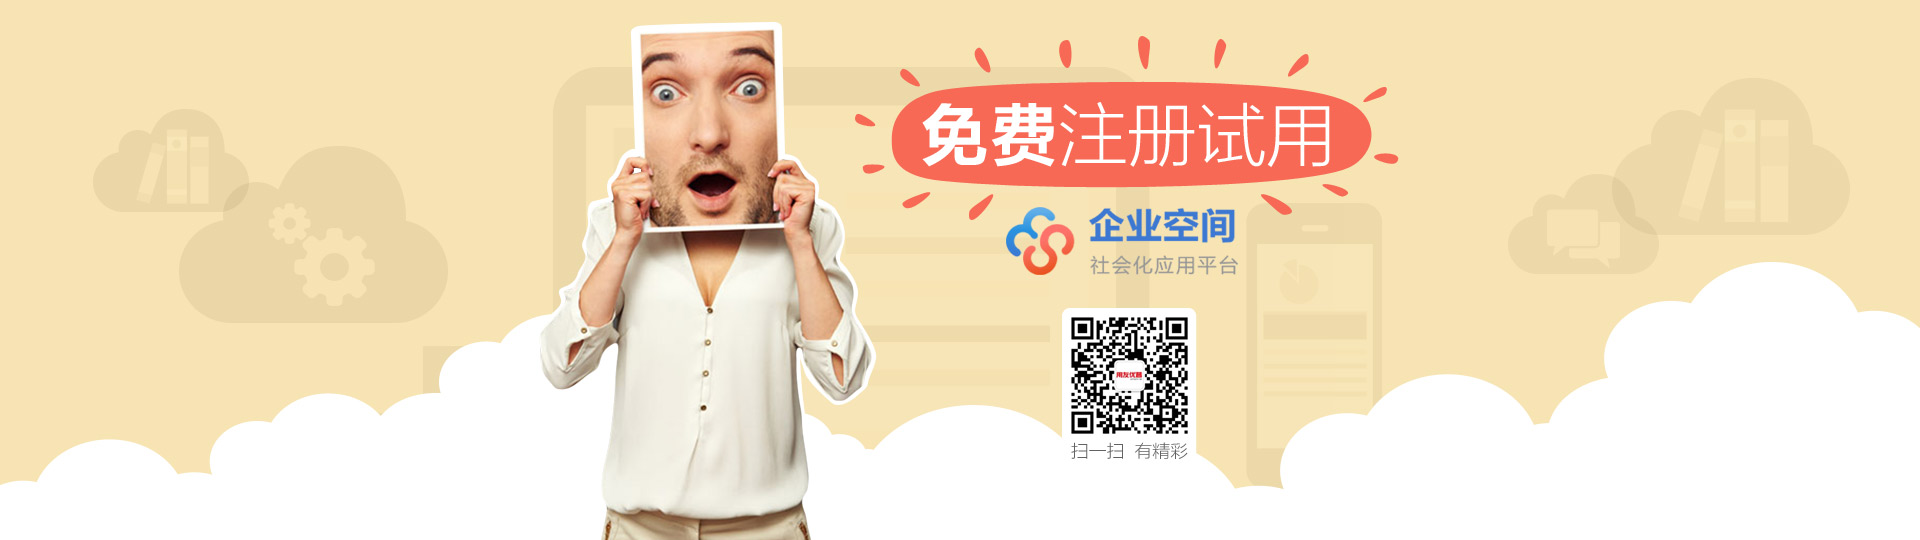 台州用友软件、台州ERP销售服务商：台州优友信息